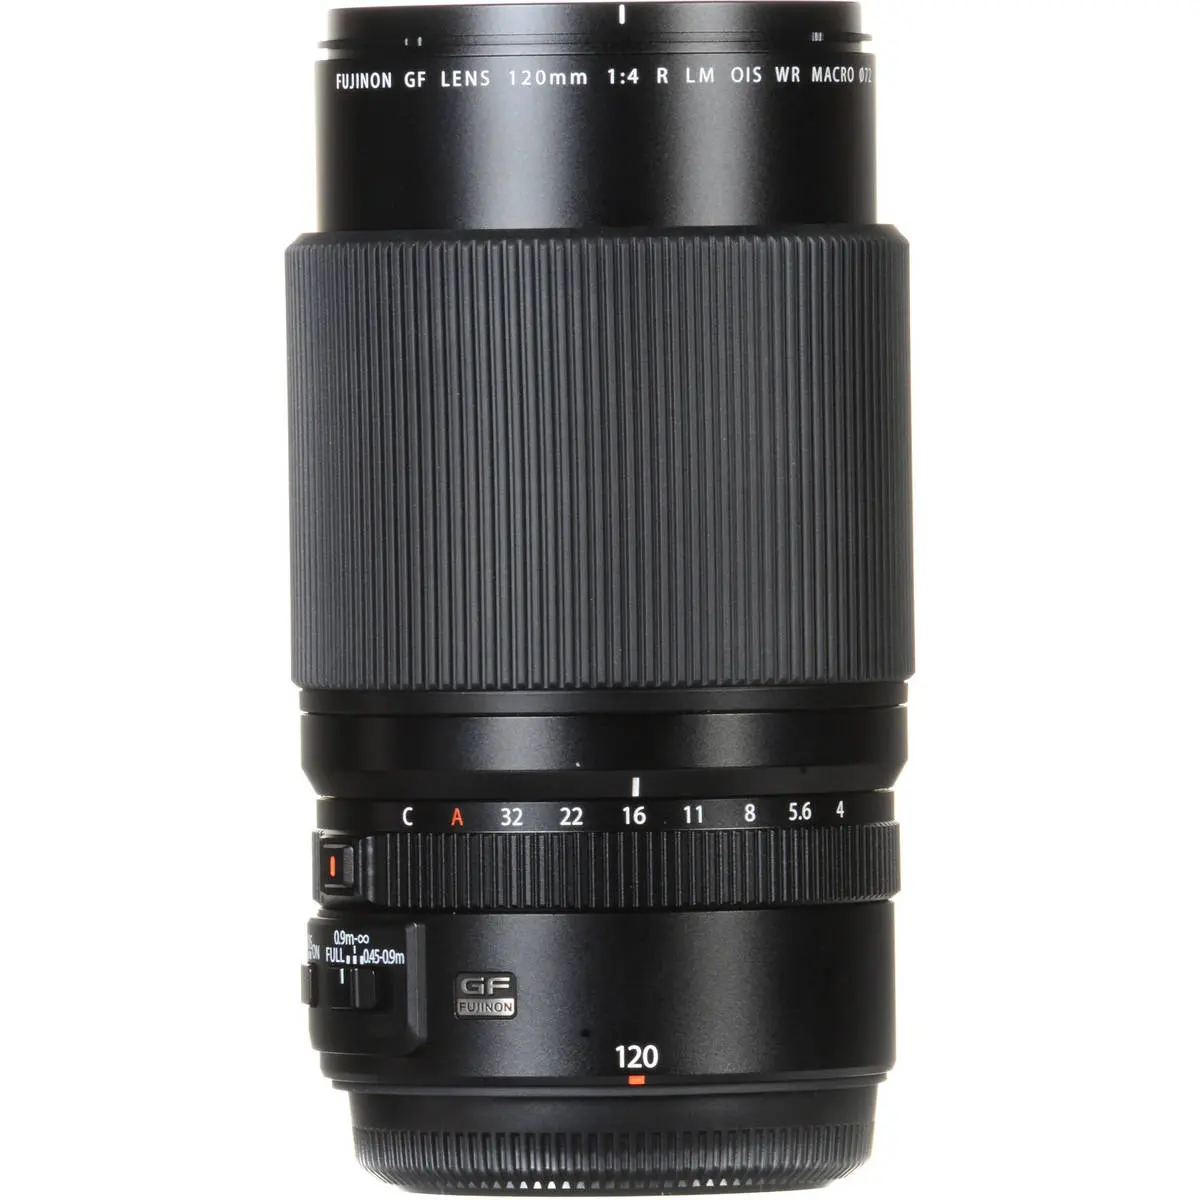 2. FUJINON GF 120mm f/4 R LM OIS WR Macro Lens Lens